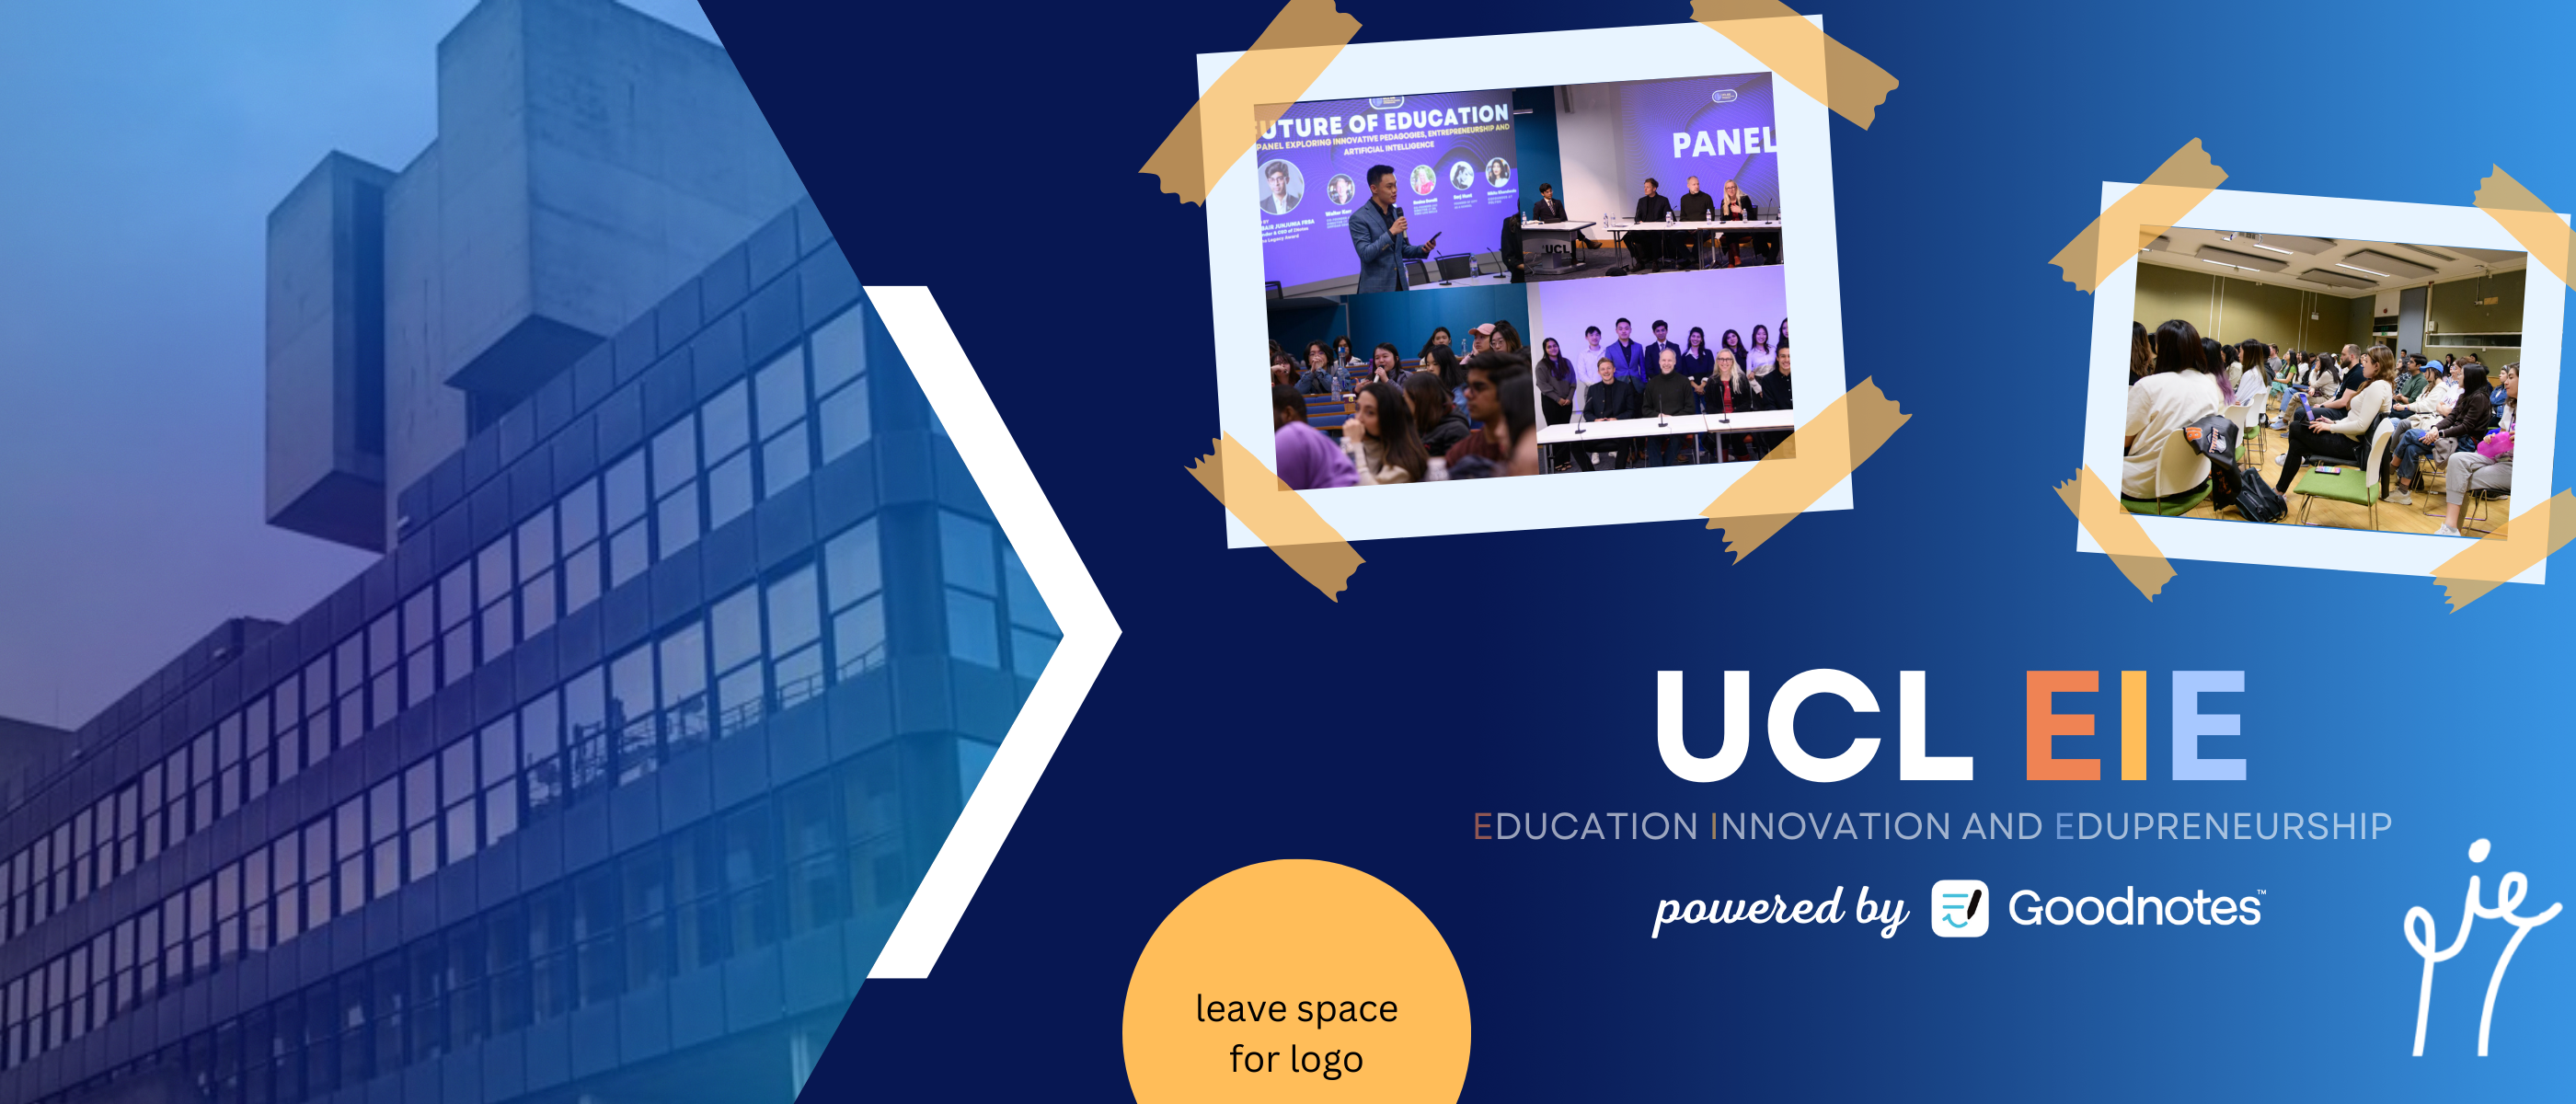 Banner for UCL Education Innovation and Edupreneurship (EIE) Society